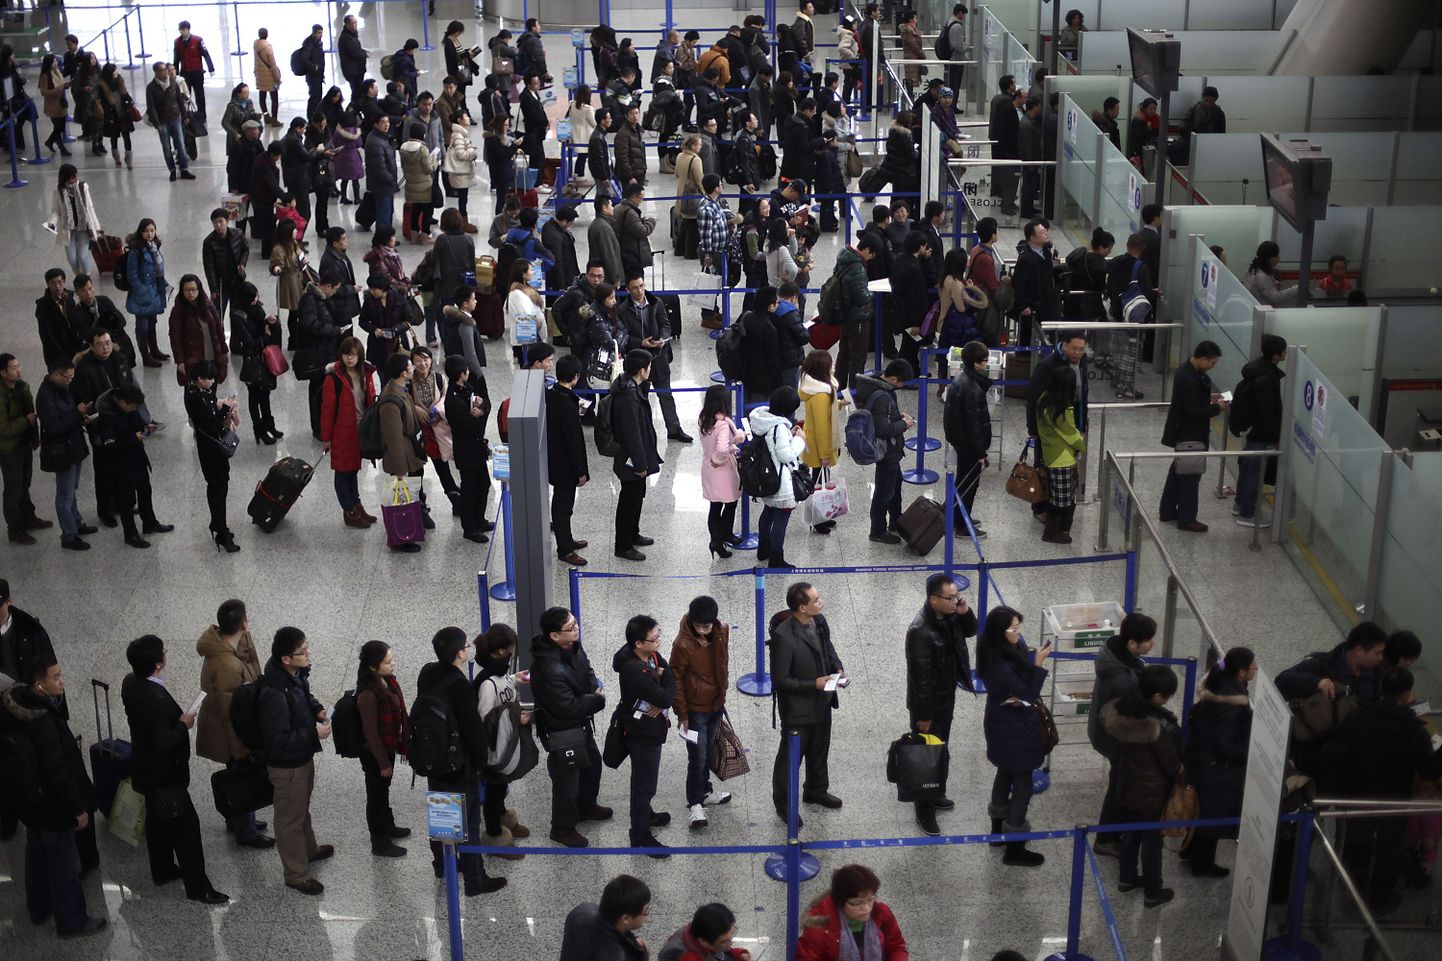 Reisijad järjekorras Pudongi lennujaamas Shanghais, Hiinas.